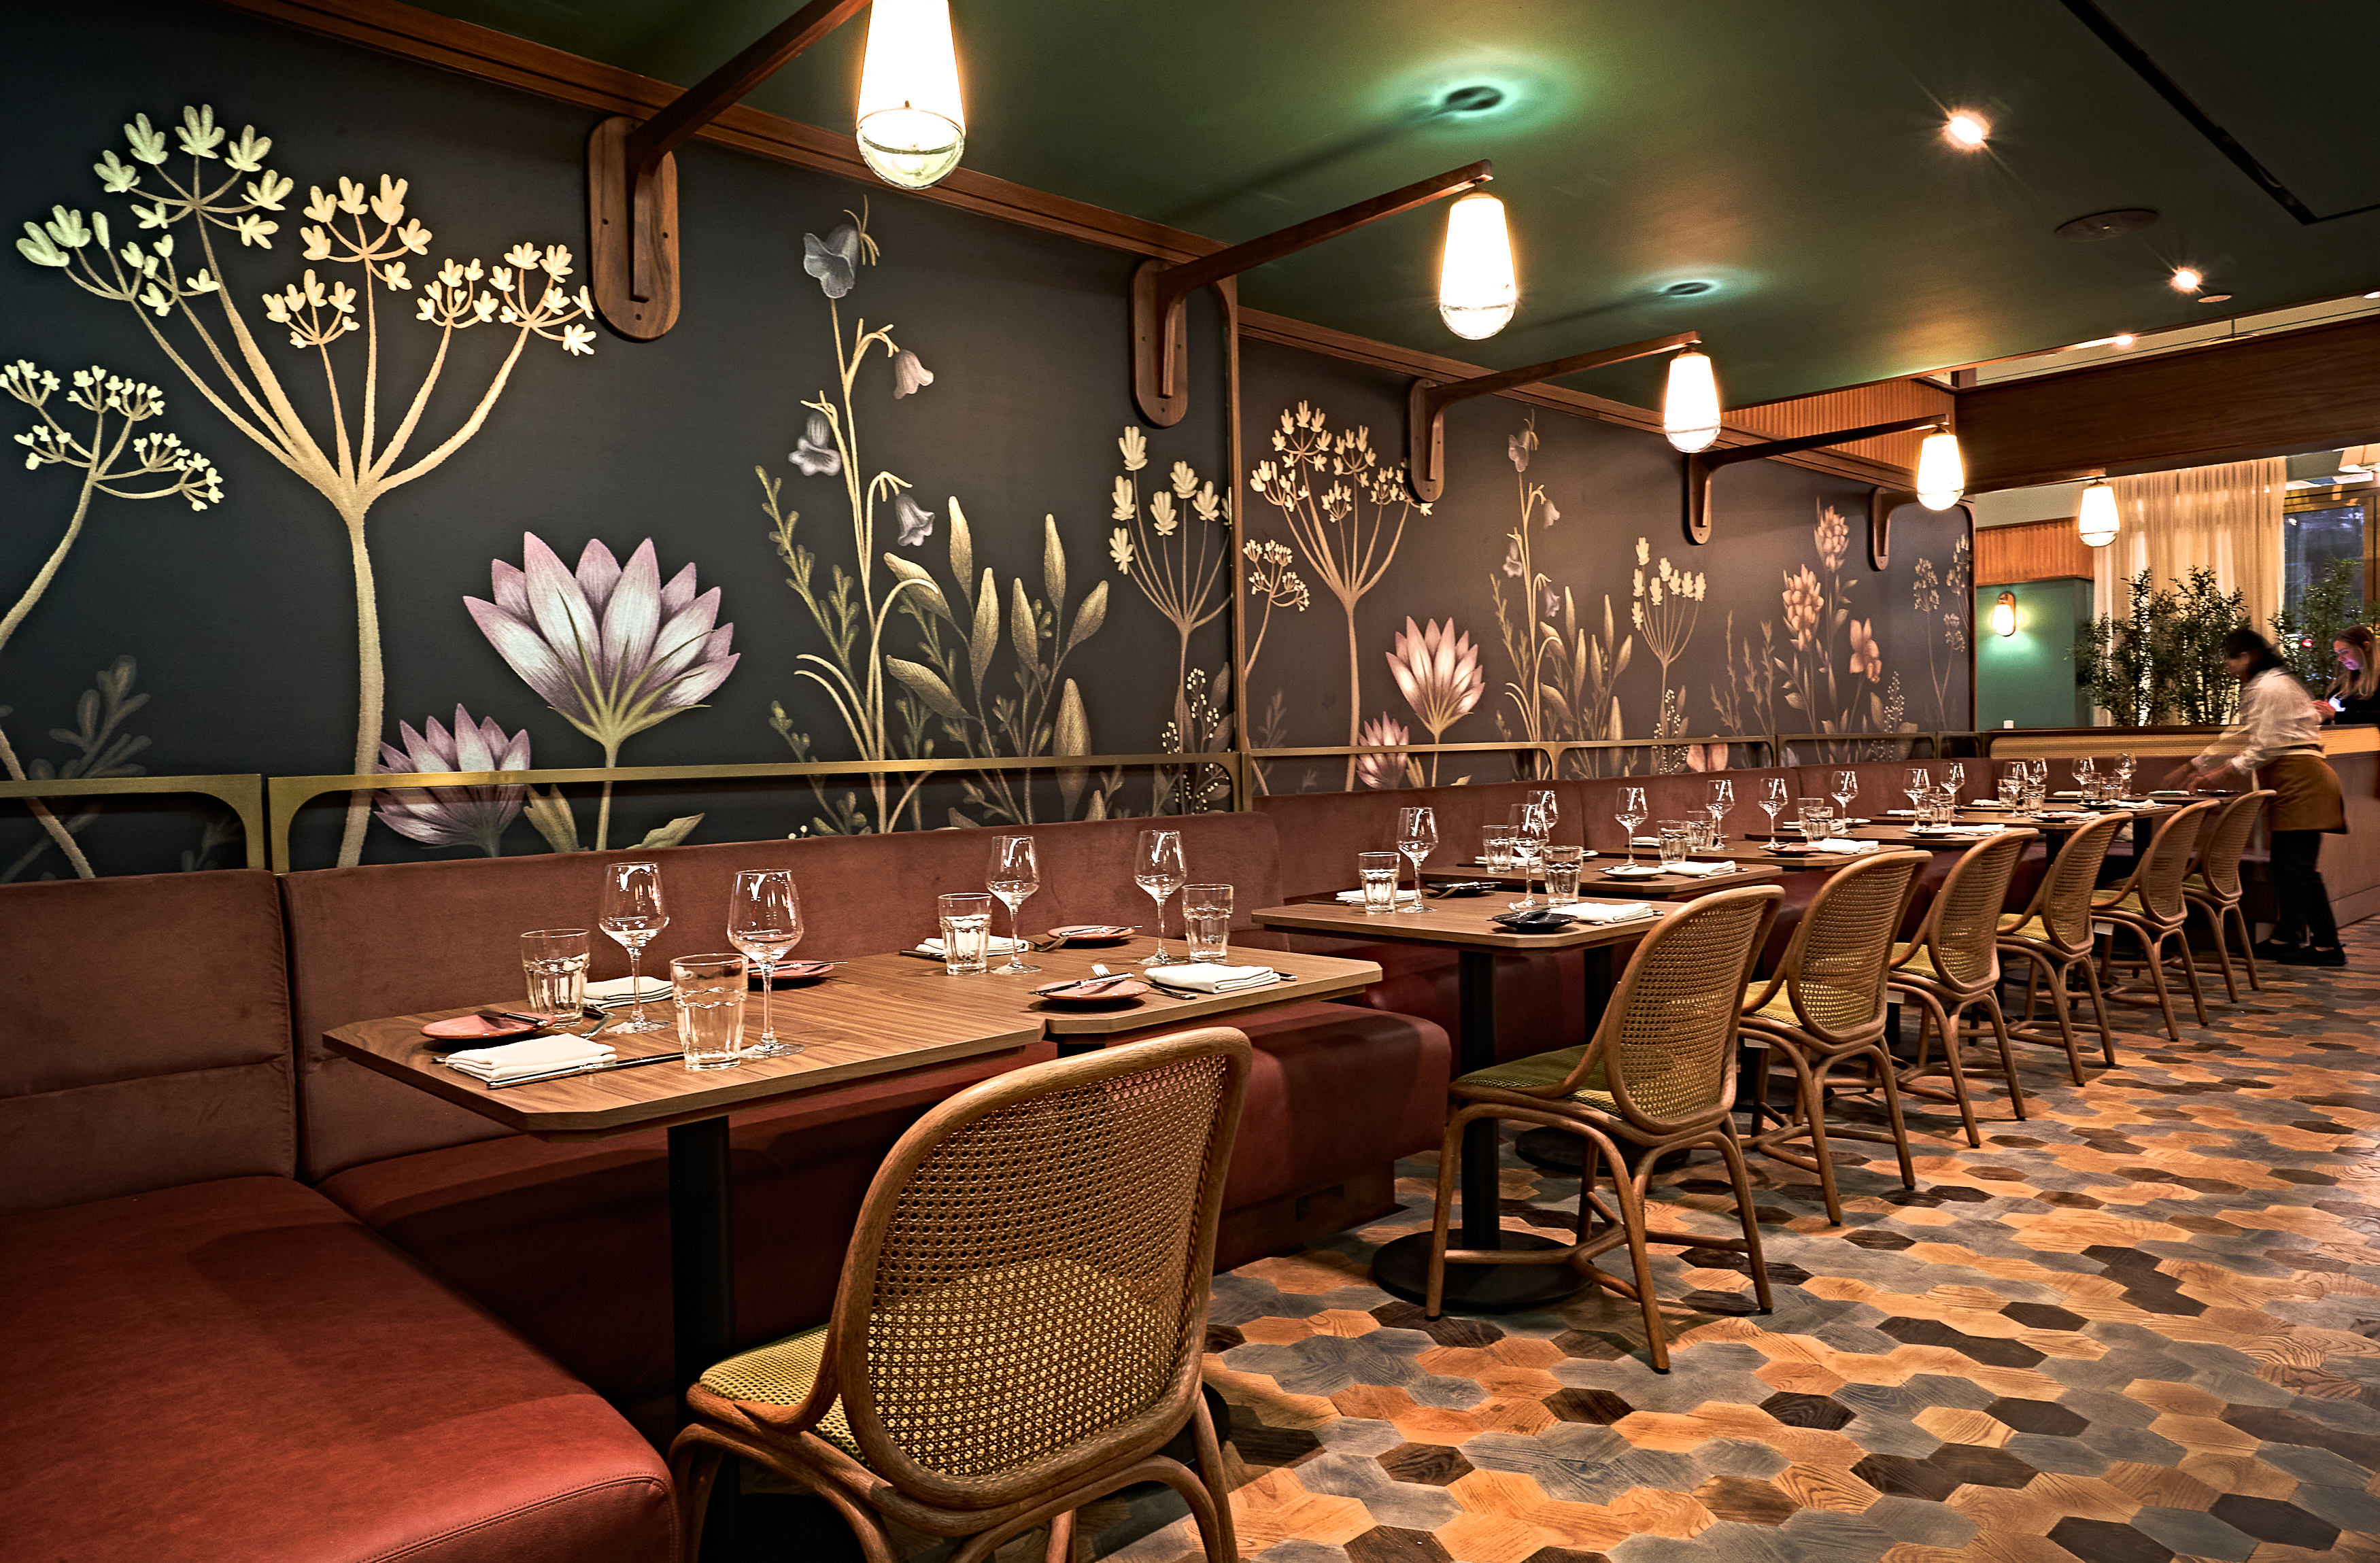 一家新开的餐厅里贴着壁纸的餐厅。